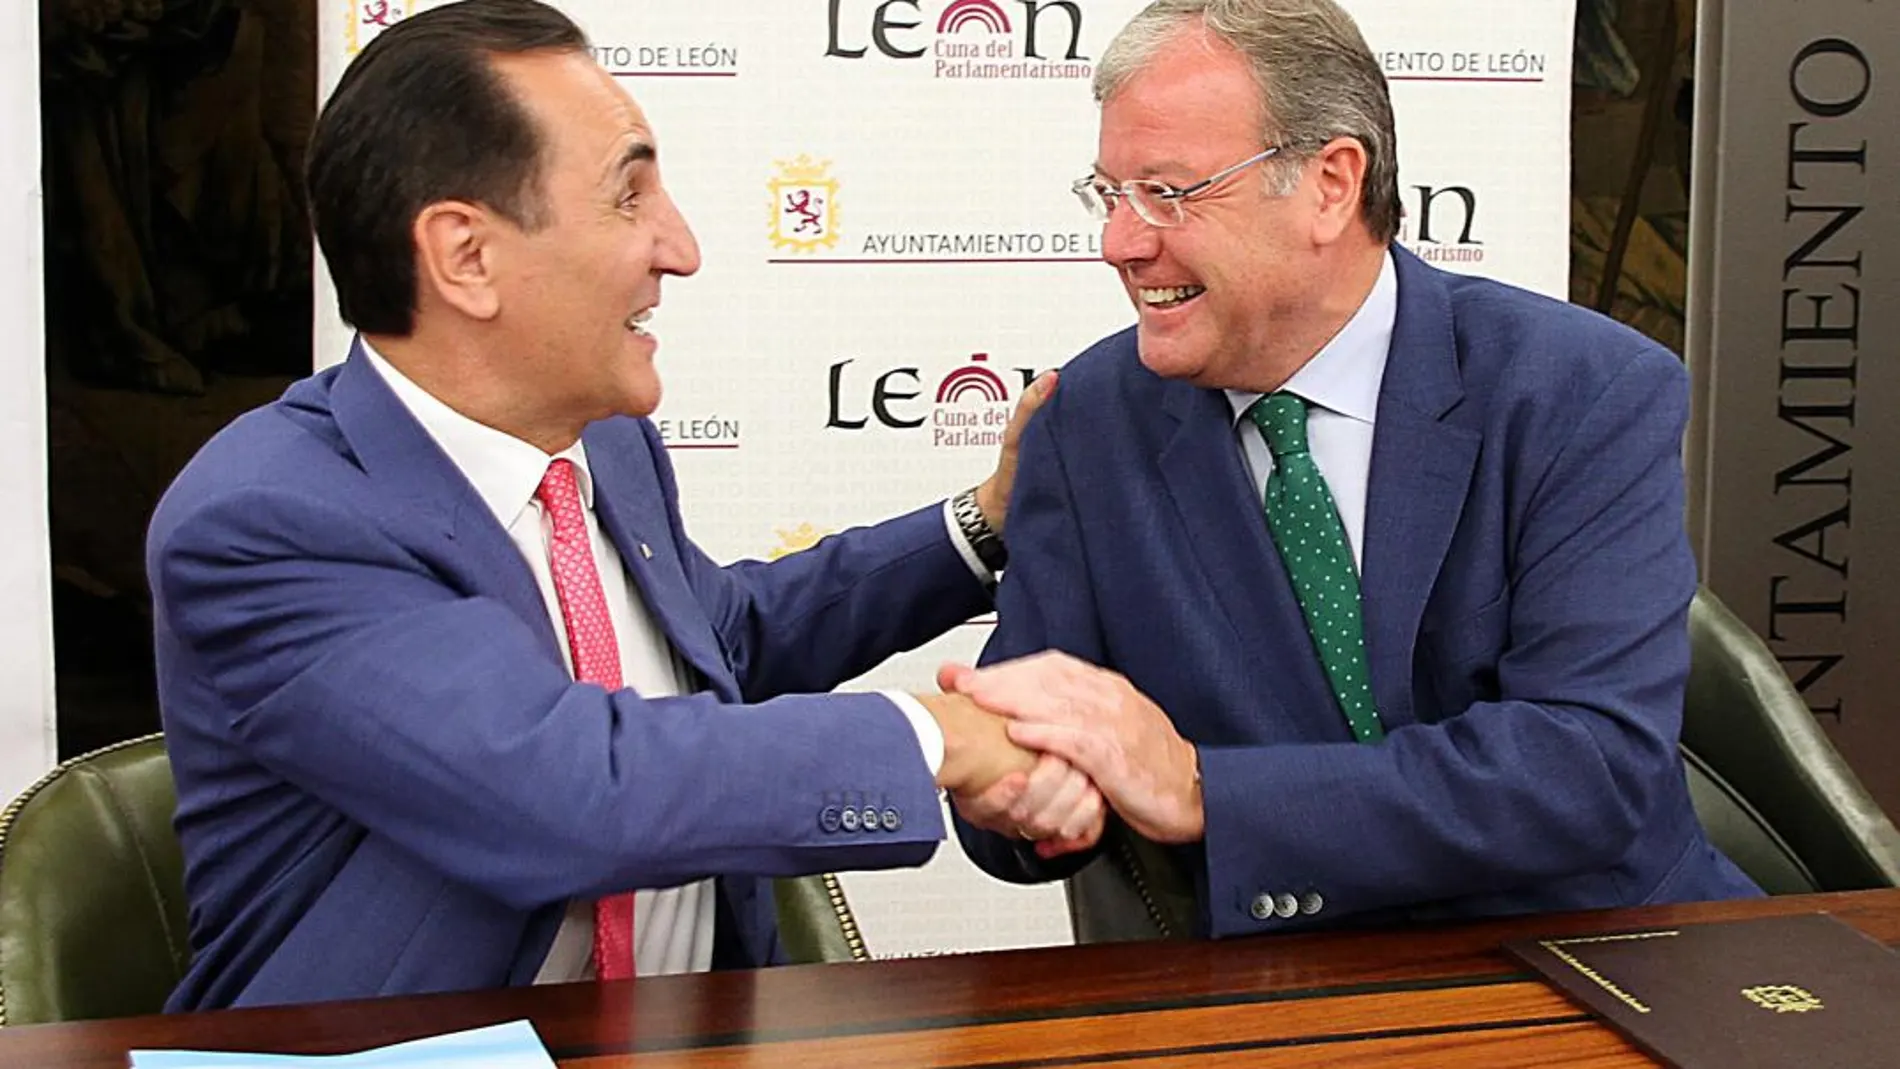 El alcalde de León, Antonio Silván, saluda al presidente de Iberaval, José Rolando Álvarez tras la firma del acuerdo